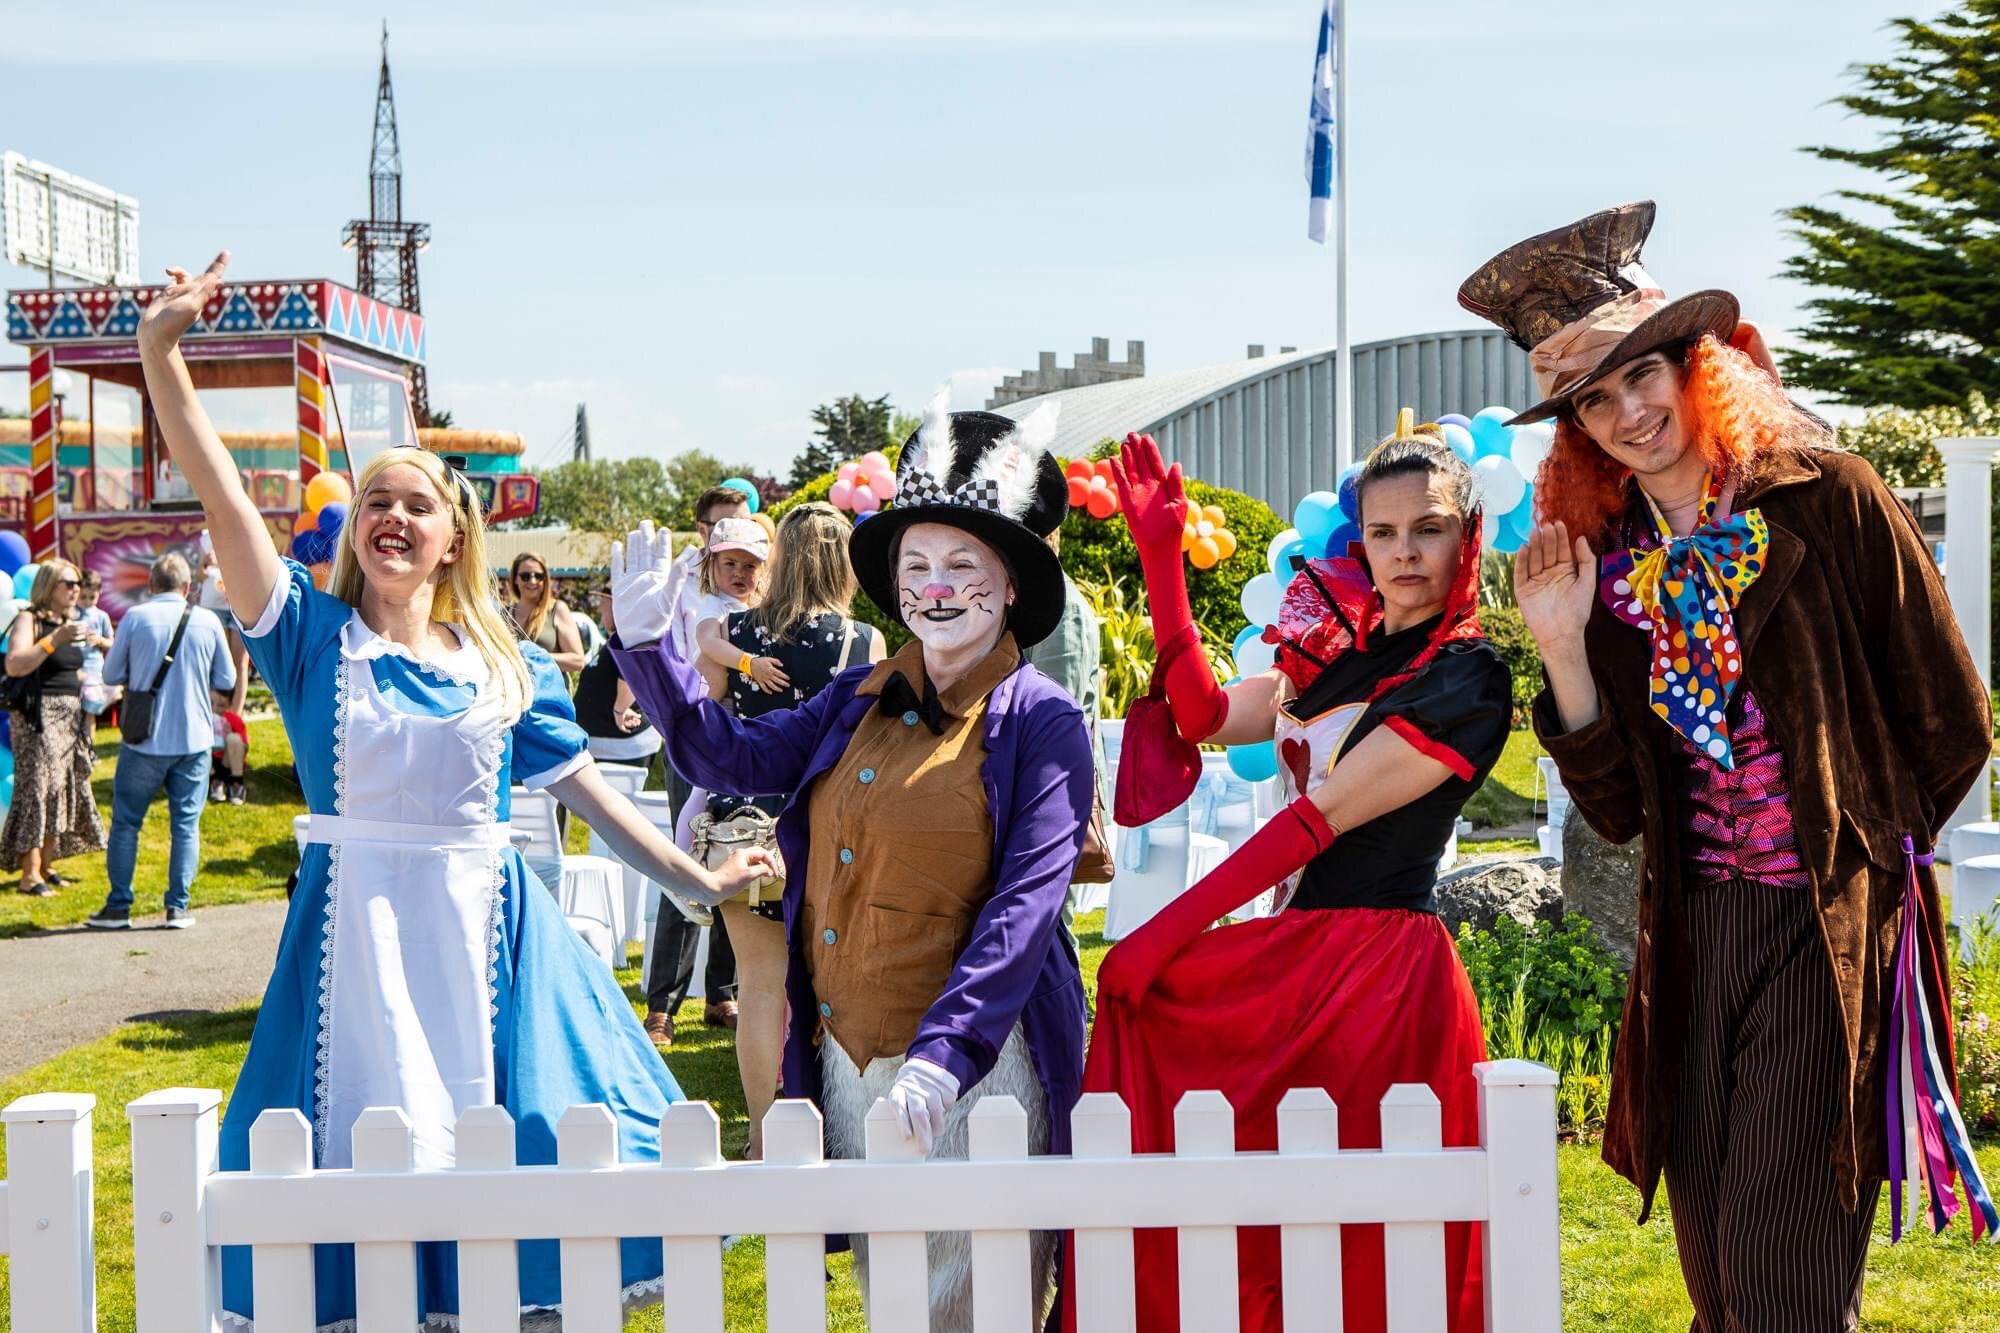 Alice in wonderland outdoor theatre - performers in costume